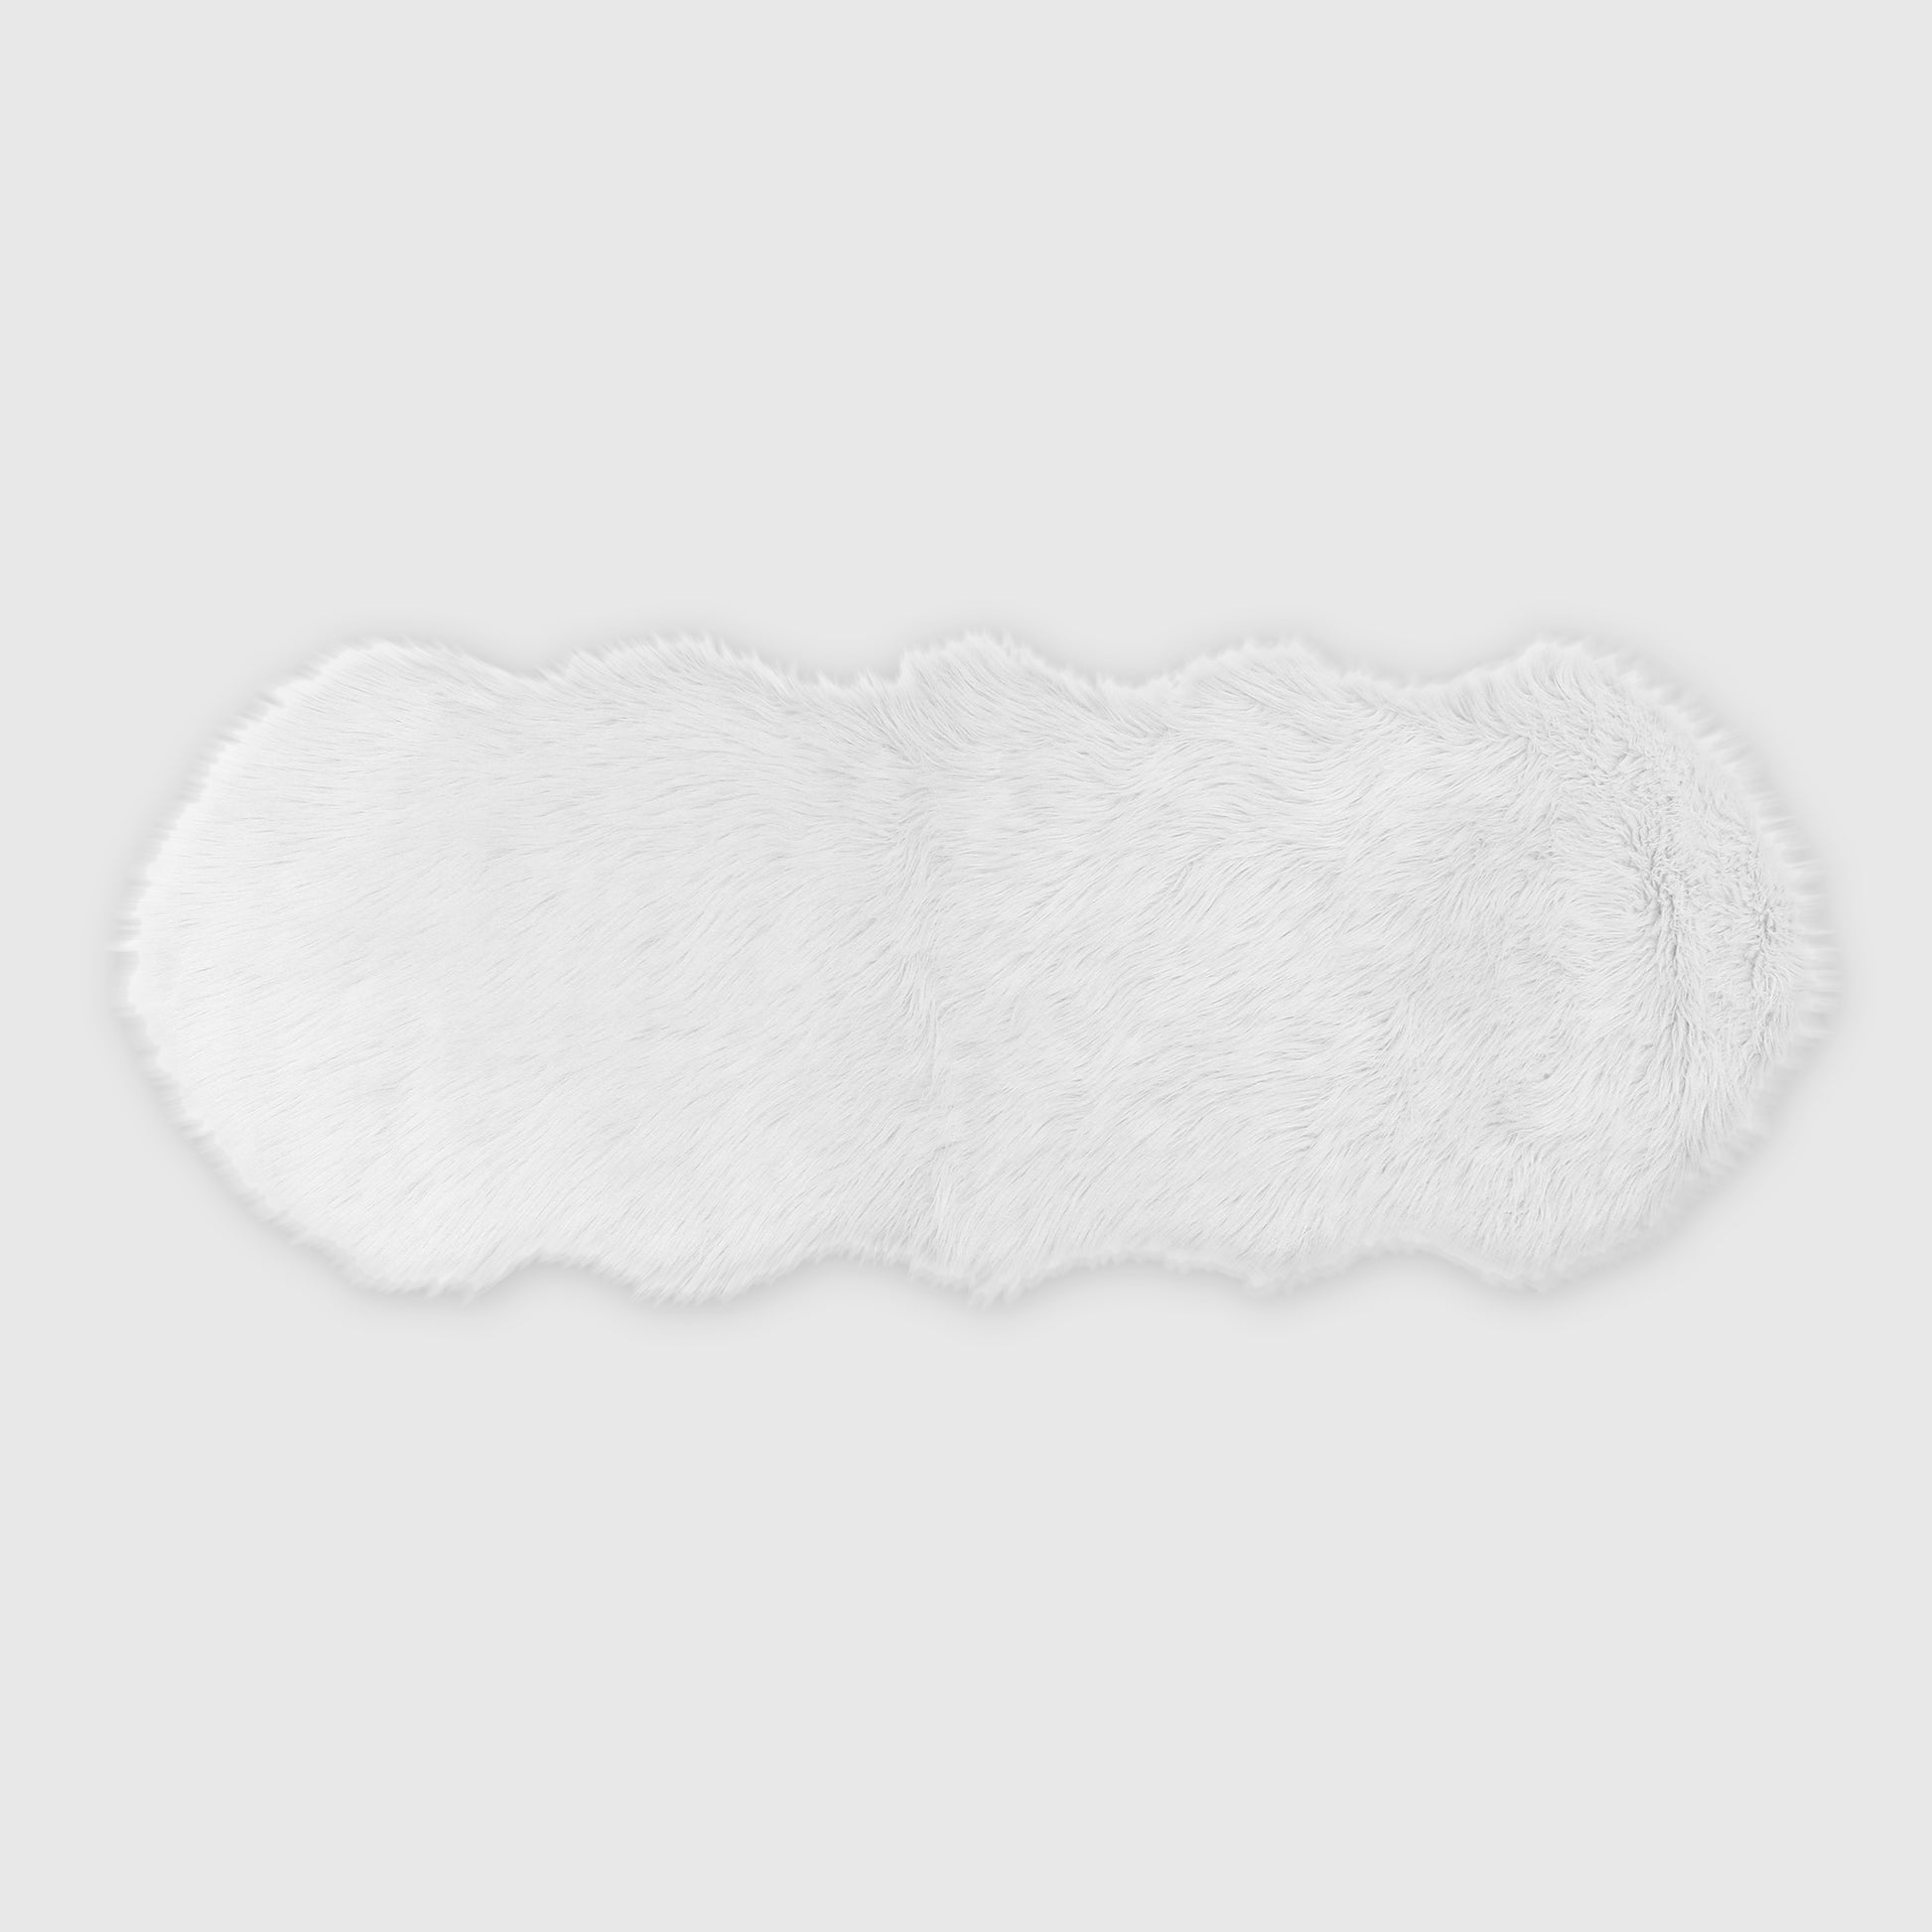 The Mood | Harris Faux Fur 2'x5' Rug, White